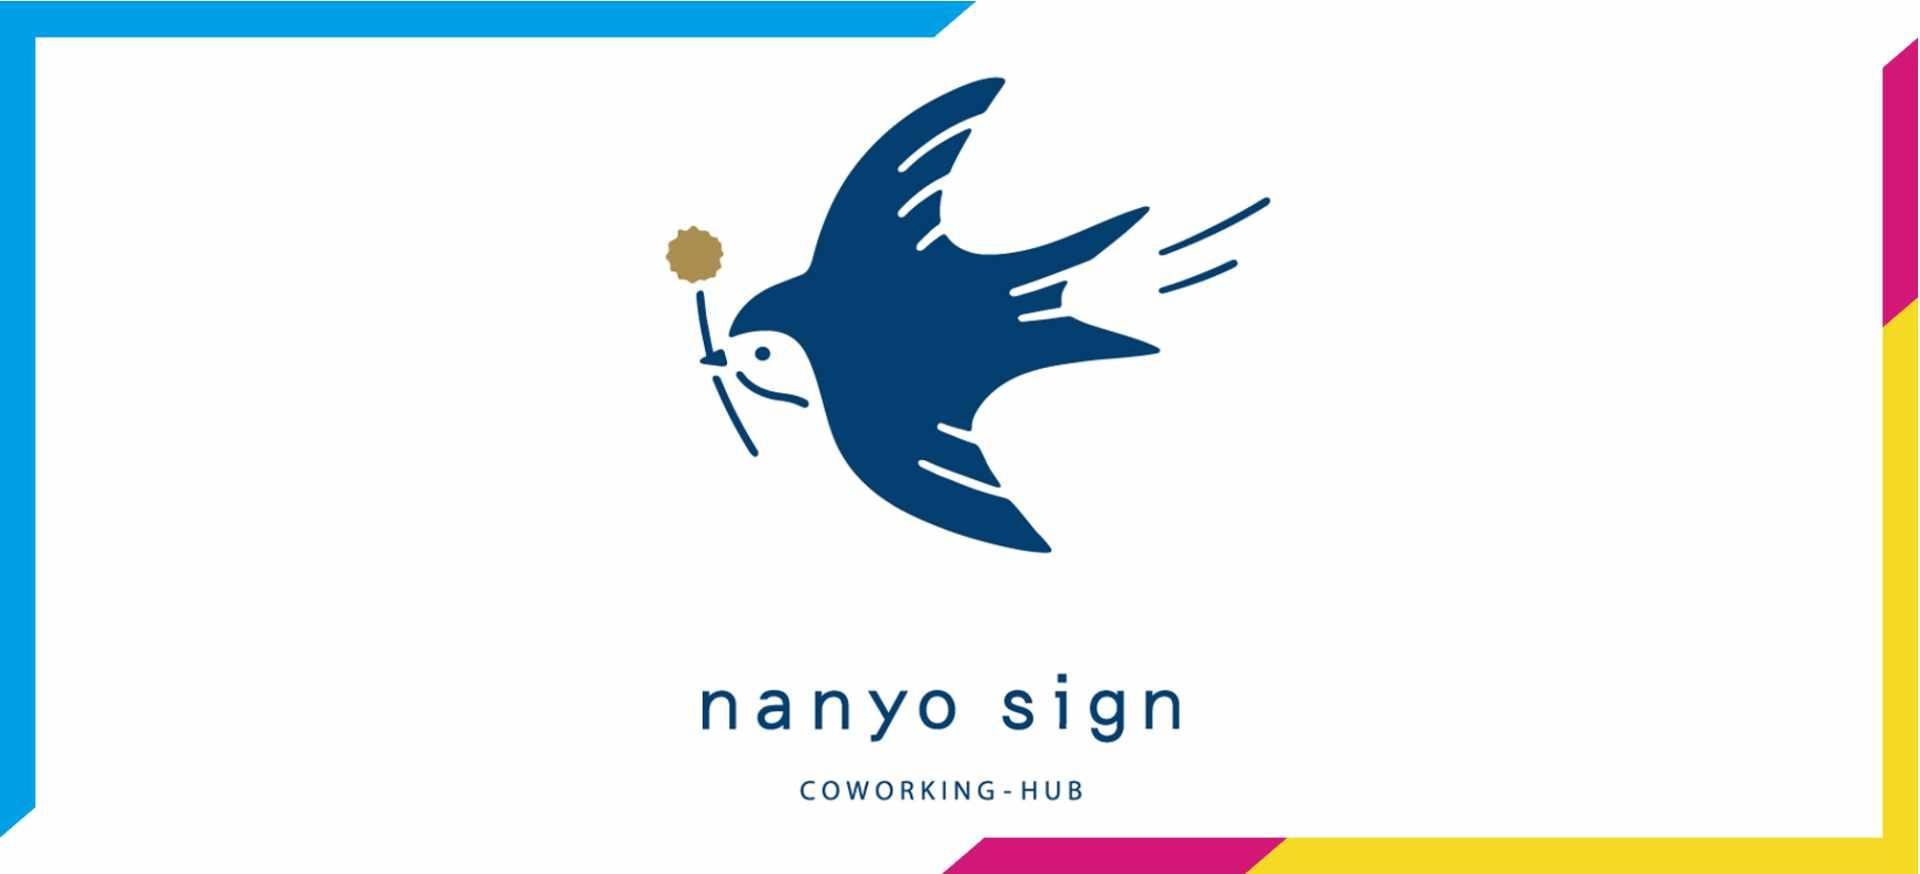 コミュニティ「COWORKING-HUB nanyo sign」のロゴ